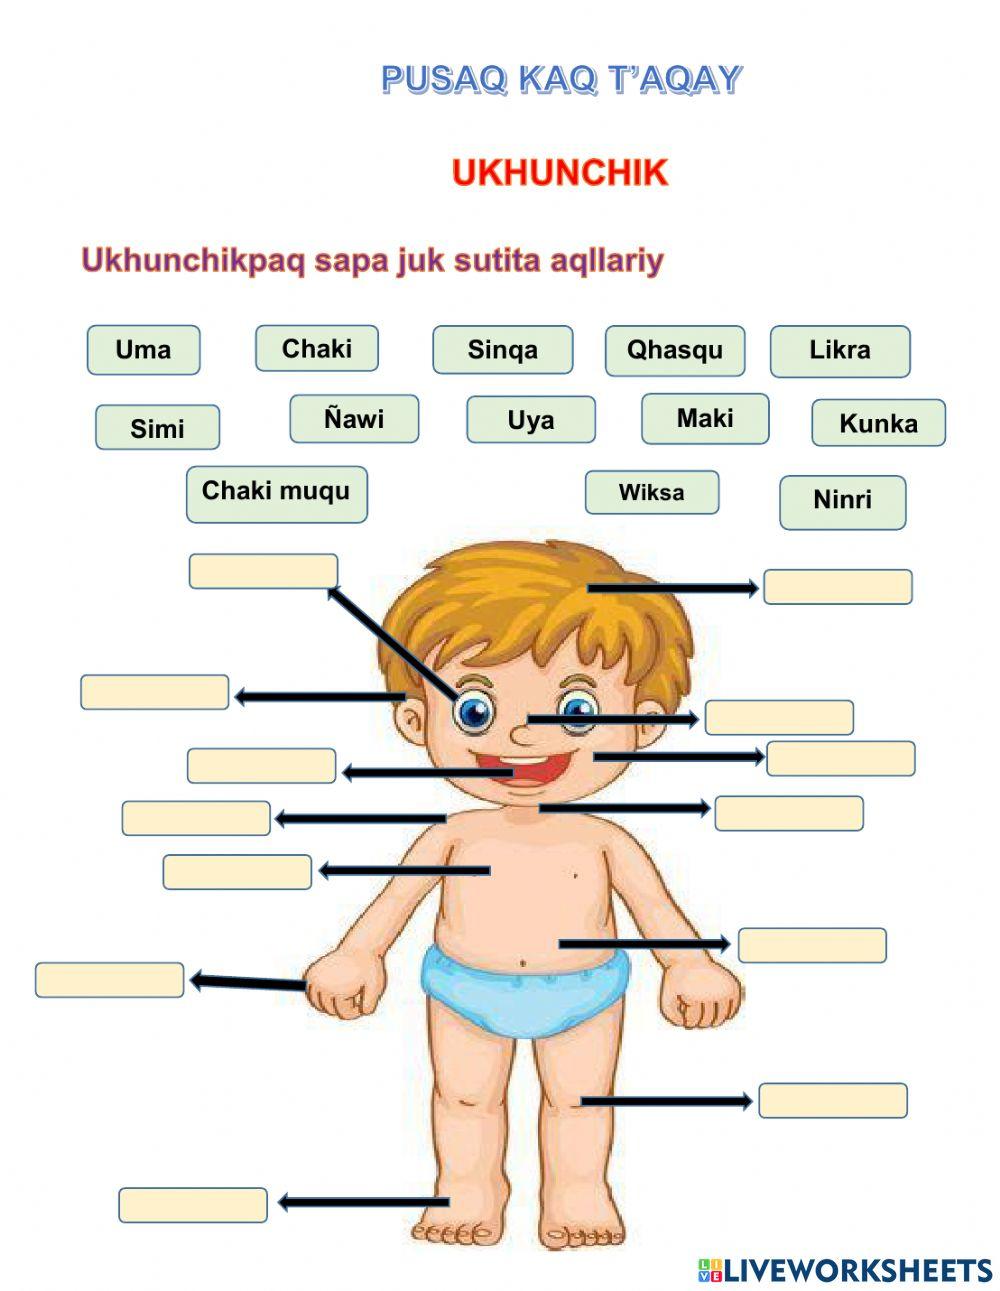 Ukhunchik